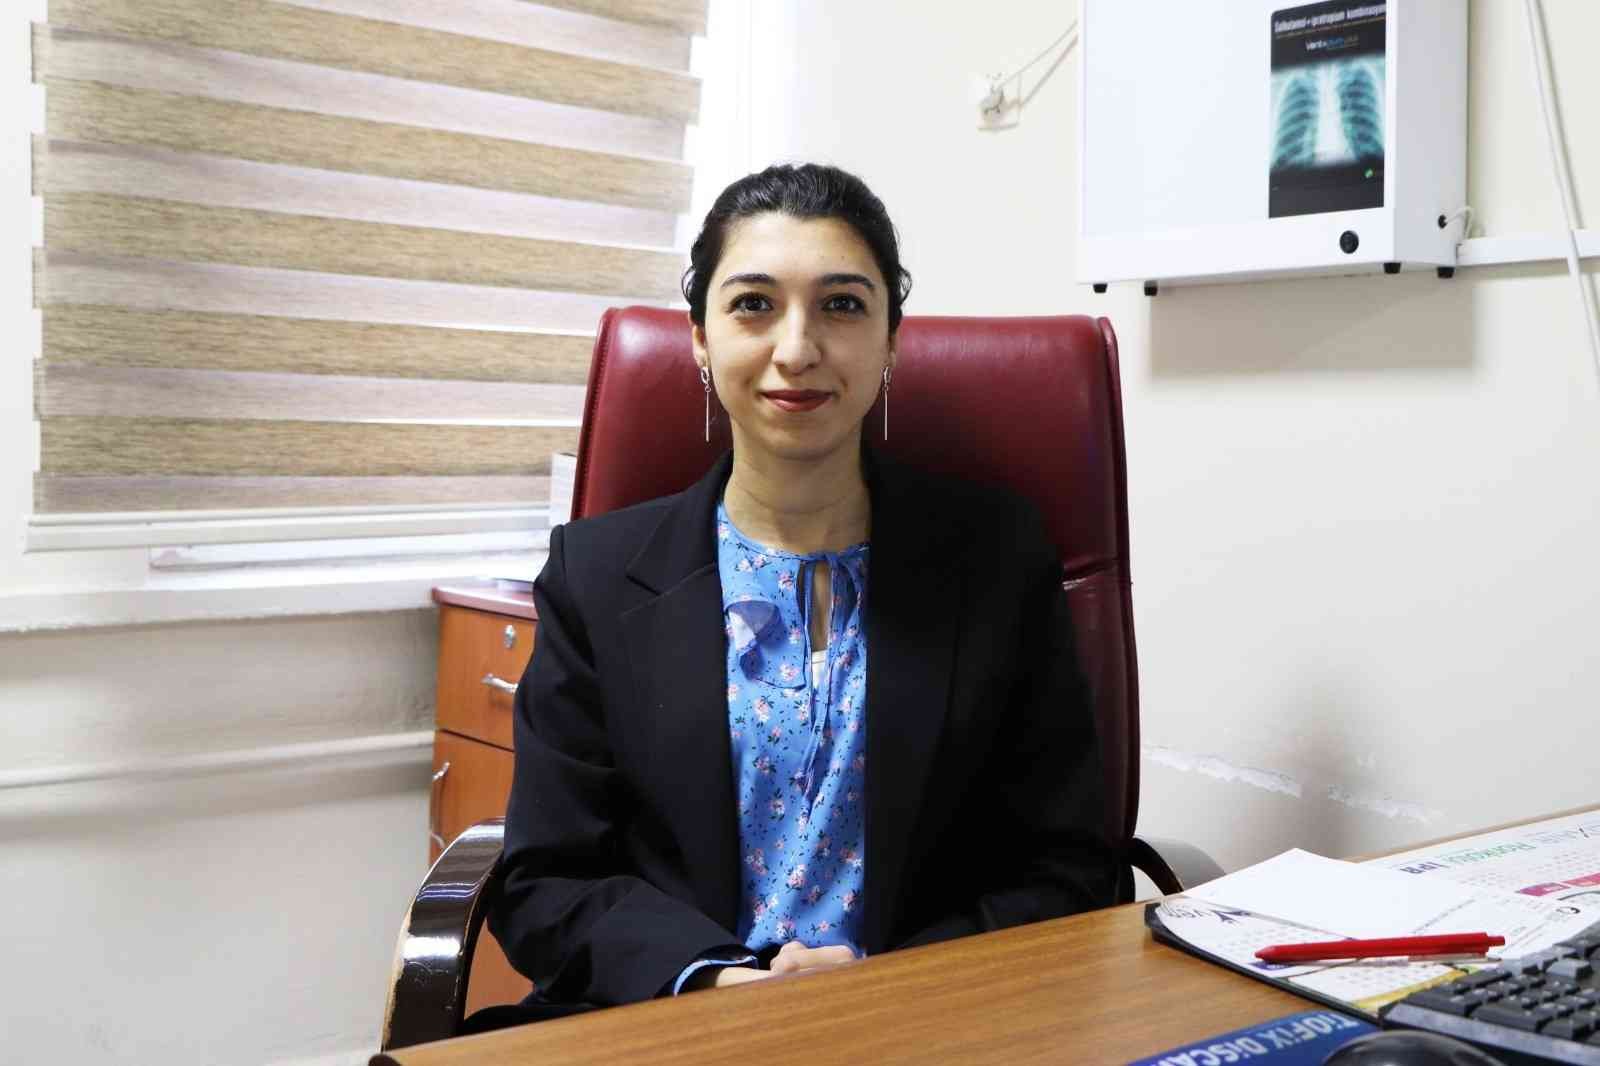 Dr. İlknur Kaya: “Alt solunum yolu enfeksiyonları olanların aşı yaptırması gerekli” #kutahya